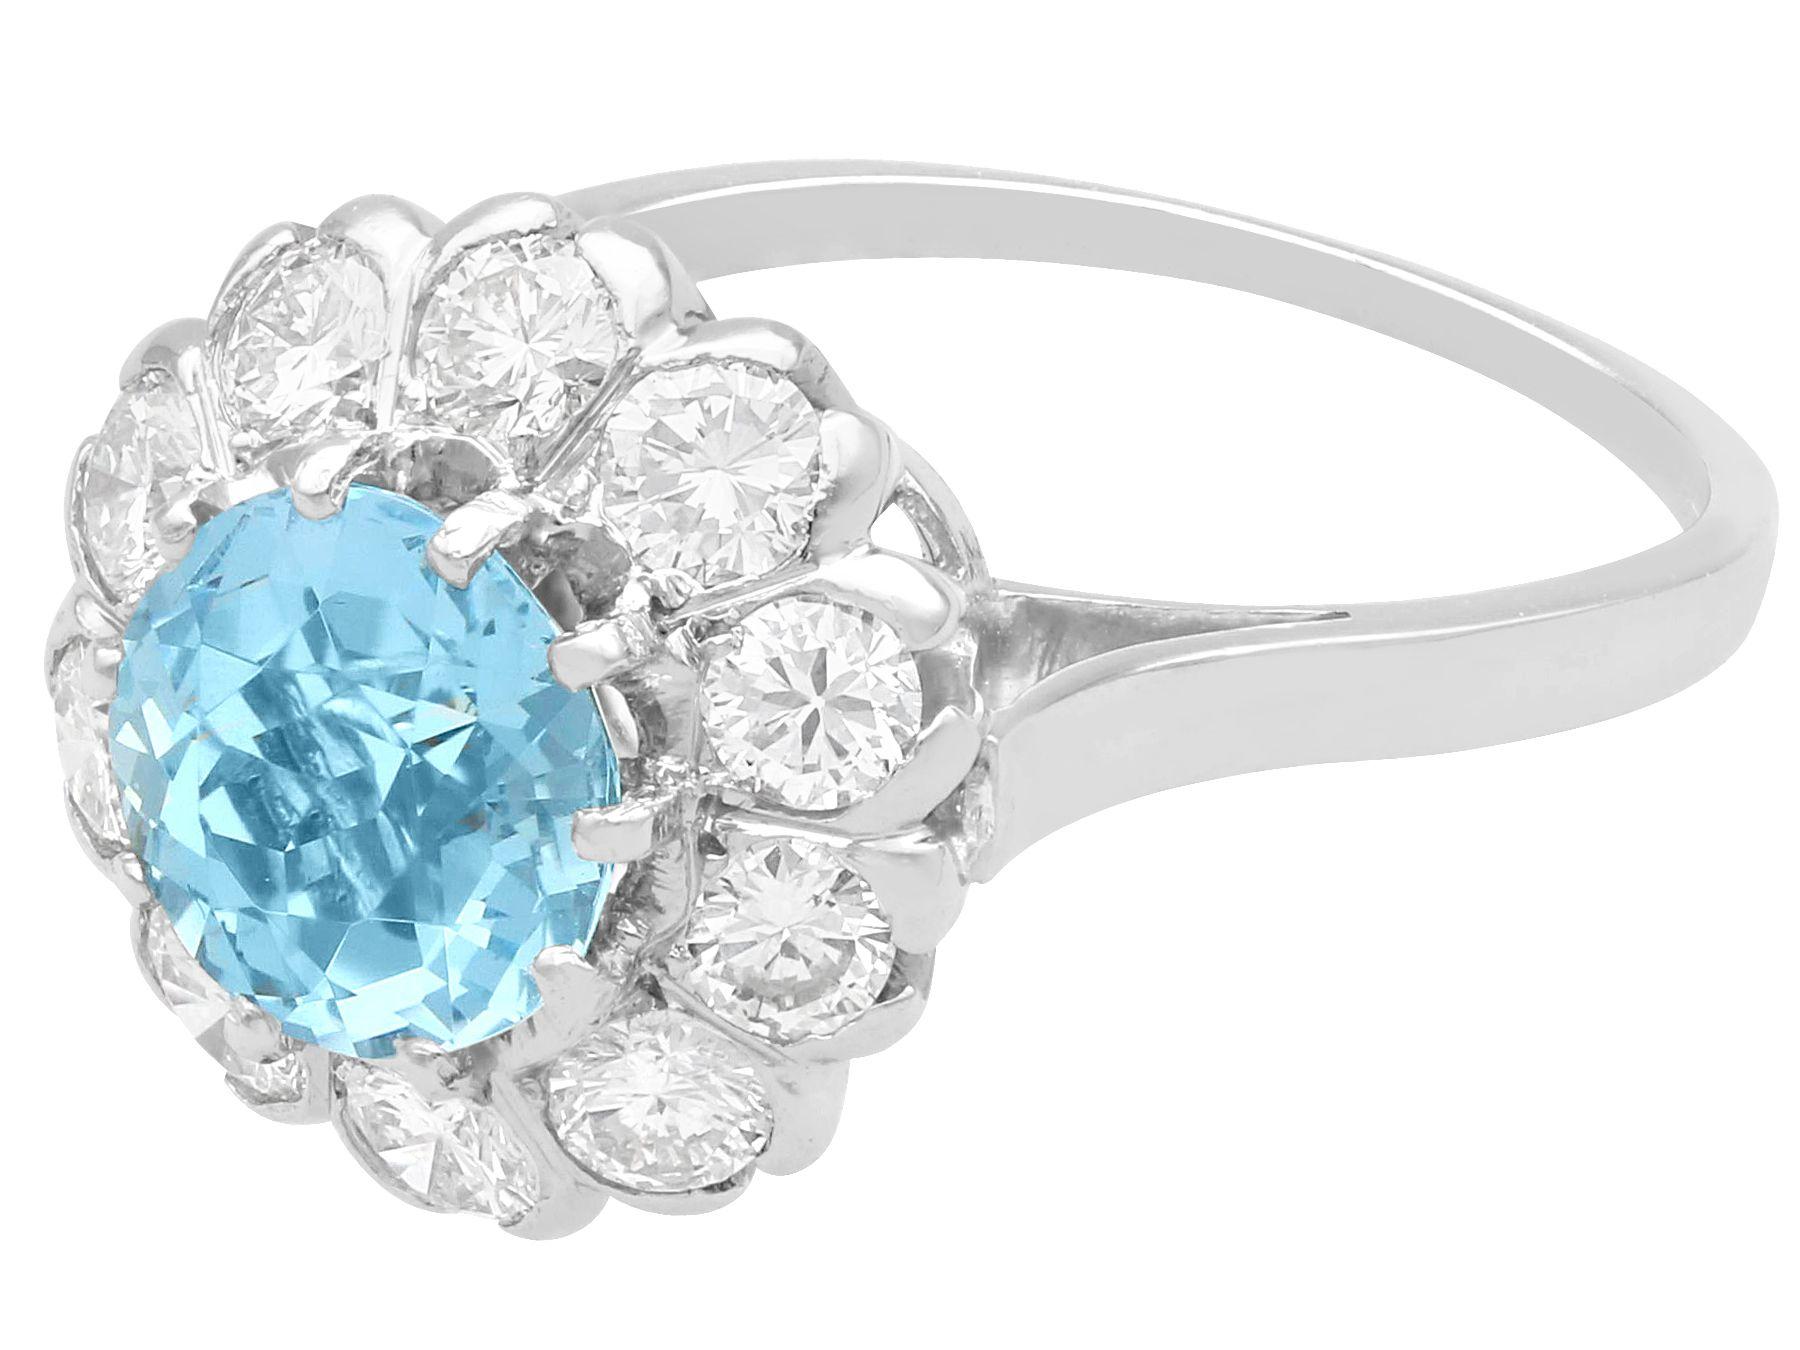 Ein atemberaubender, feiner und beeindruckender Ring mit 1,50 Karat Aquamarin und 0,95 Karat Diamant in Platin; Teil unserer vielfältigen Vintage-Schmuckkollektionen.

Dieser atemberaubende, feine und beeindruckende Aquamarin- und Diamantring ist